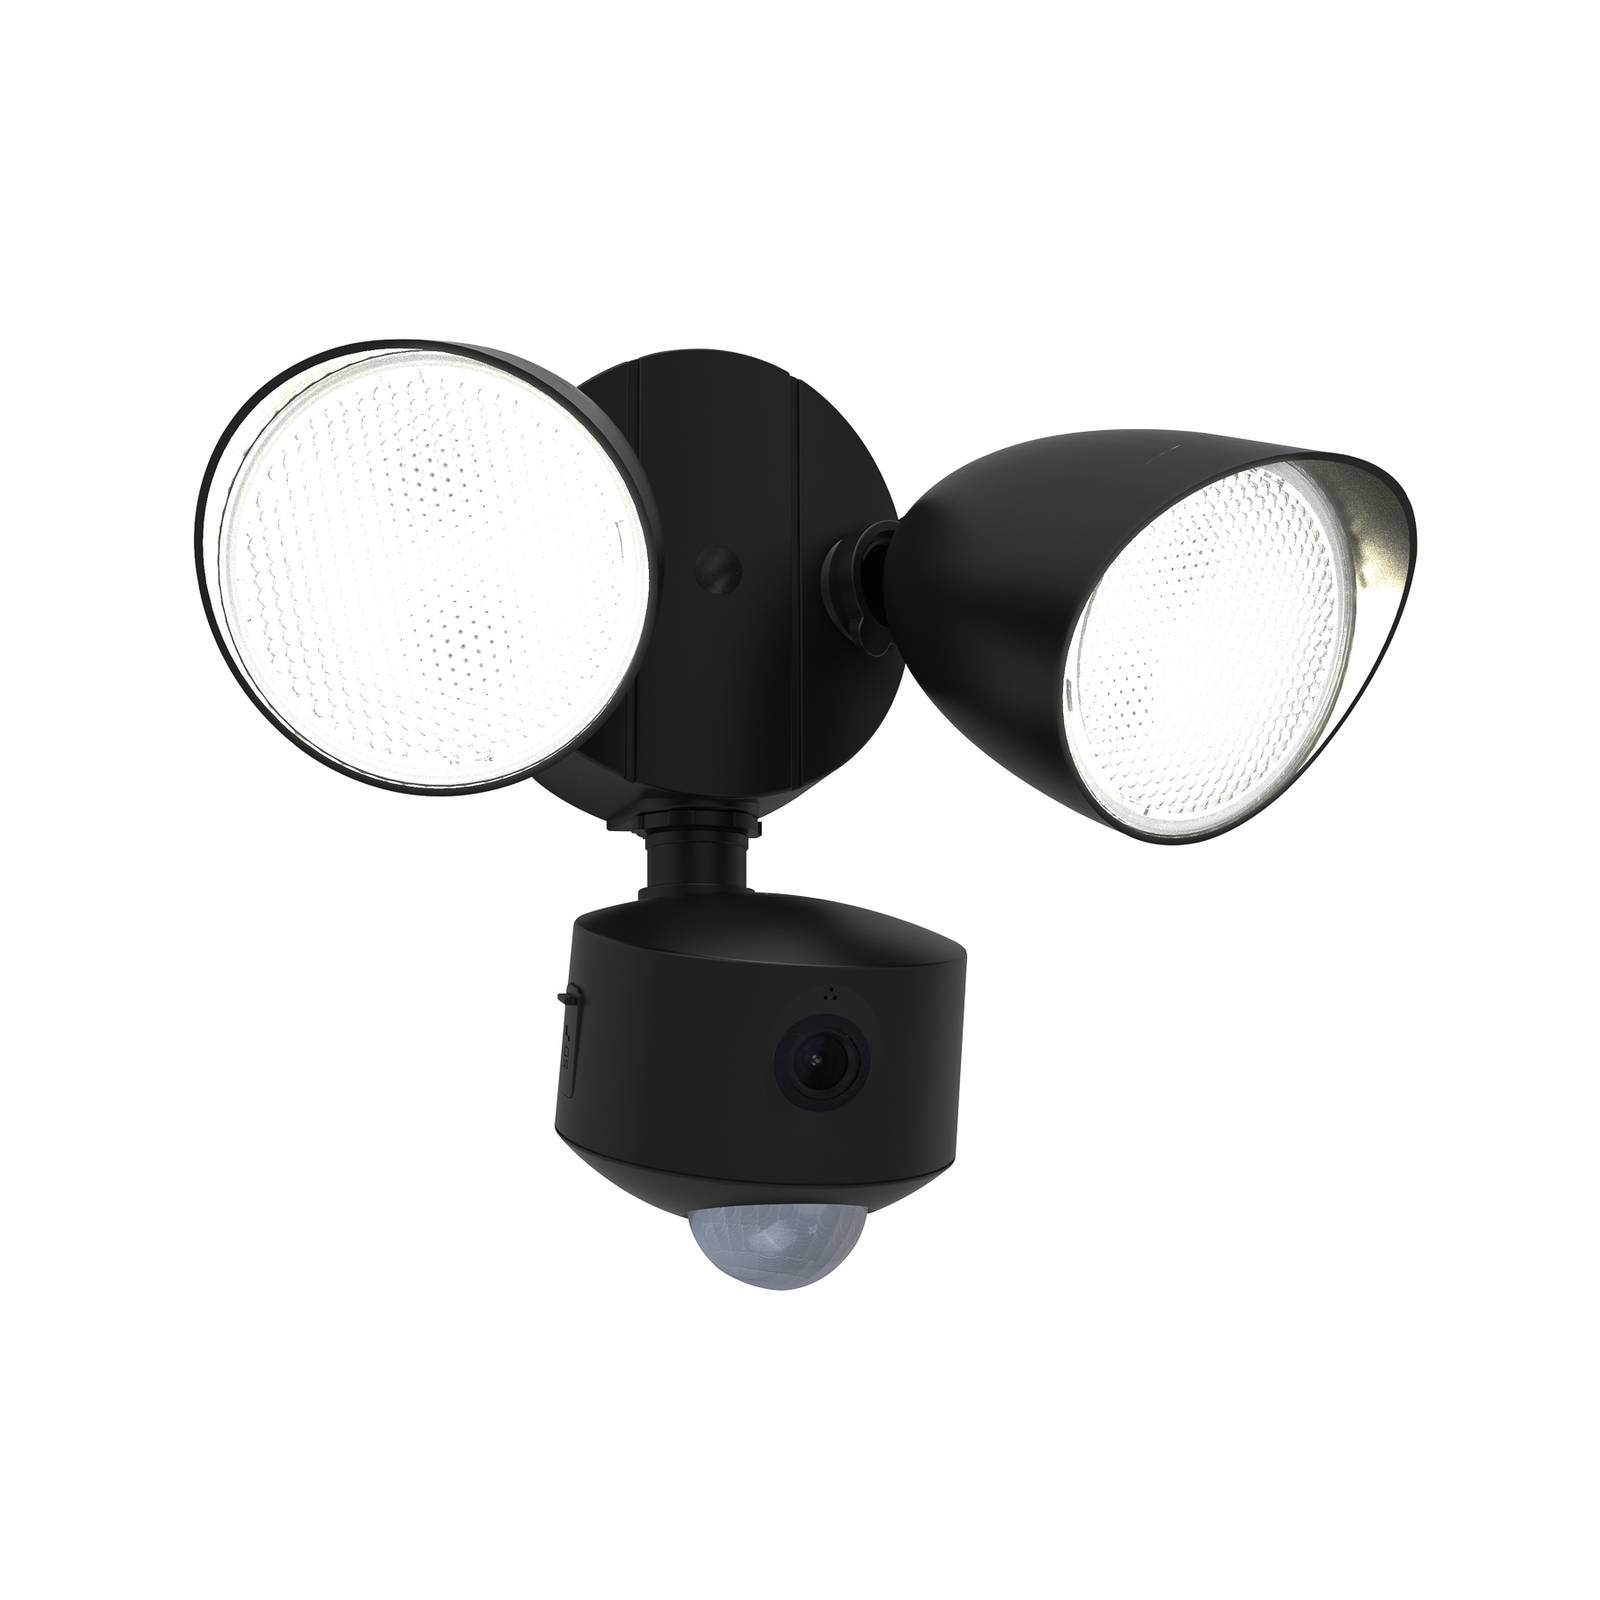 LED külső fali világítás Draco kamera érzékelő